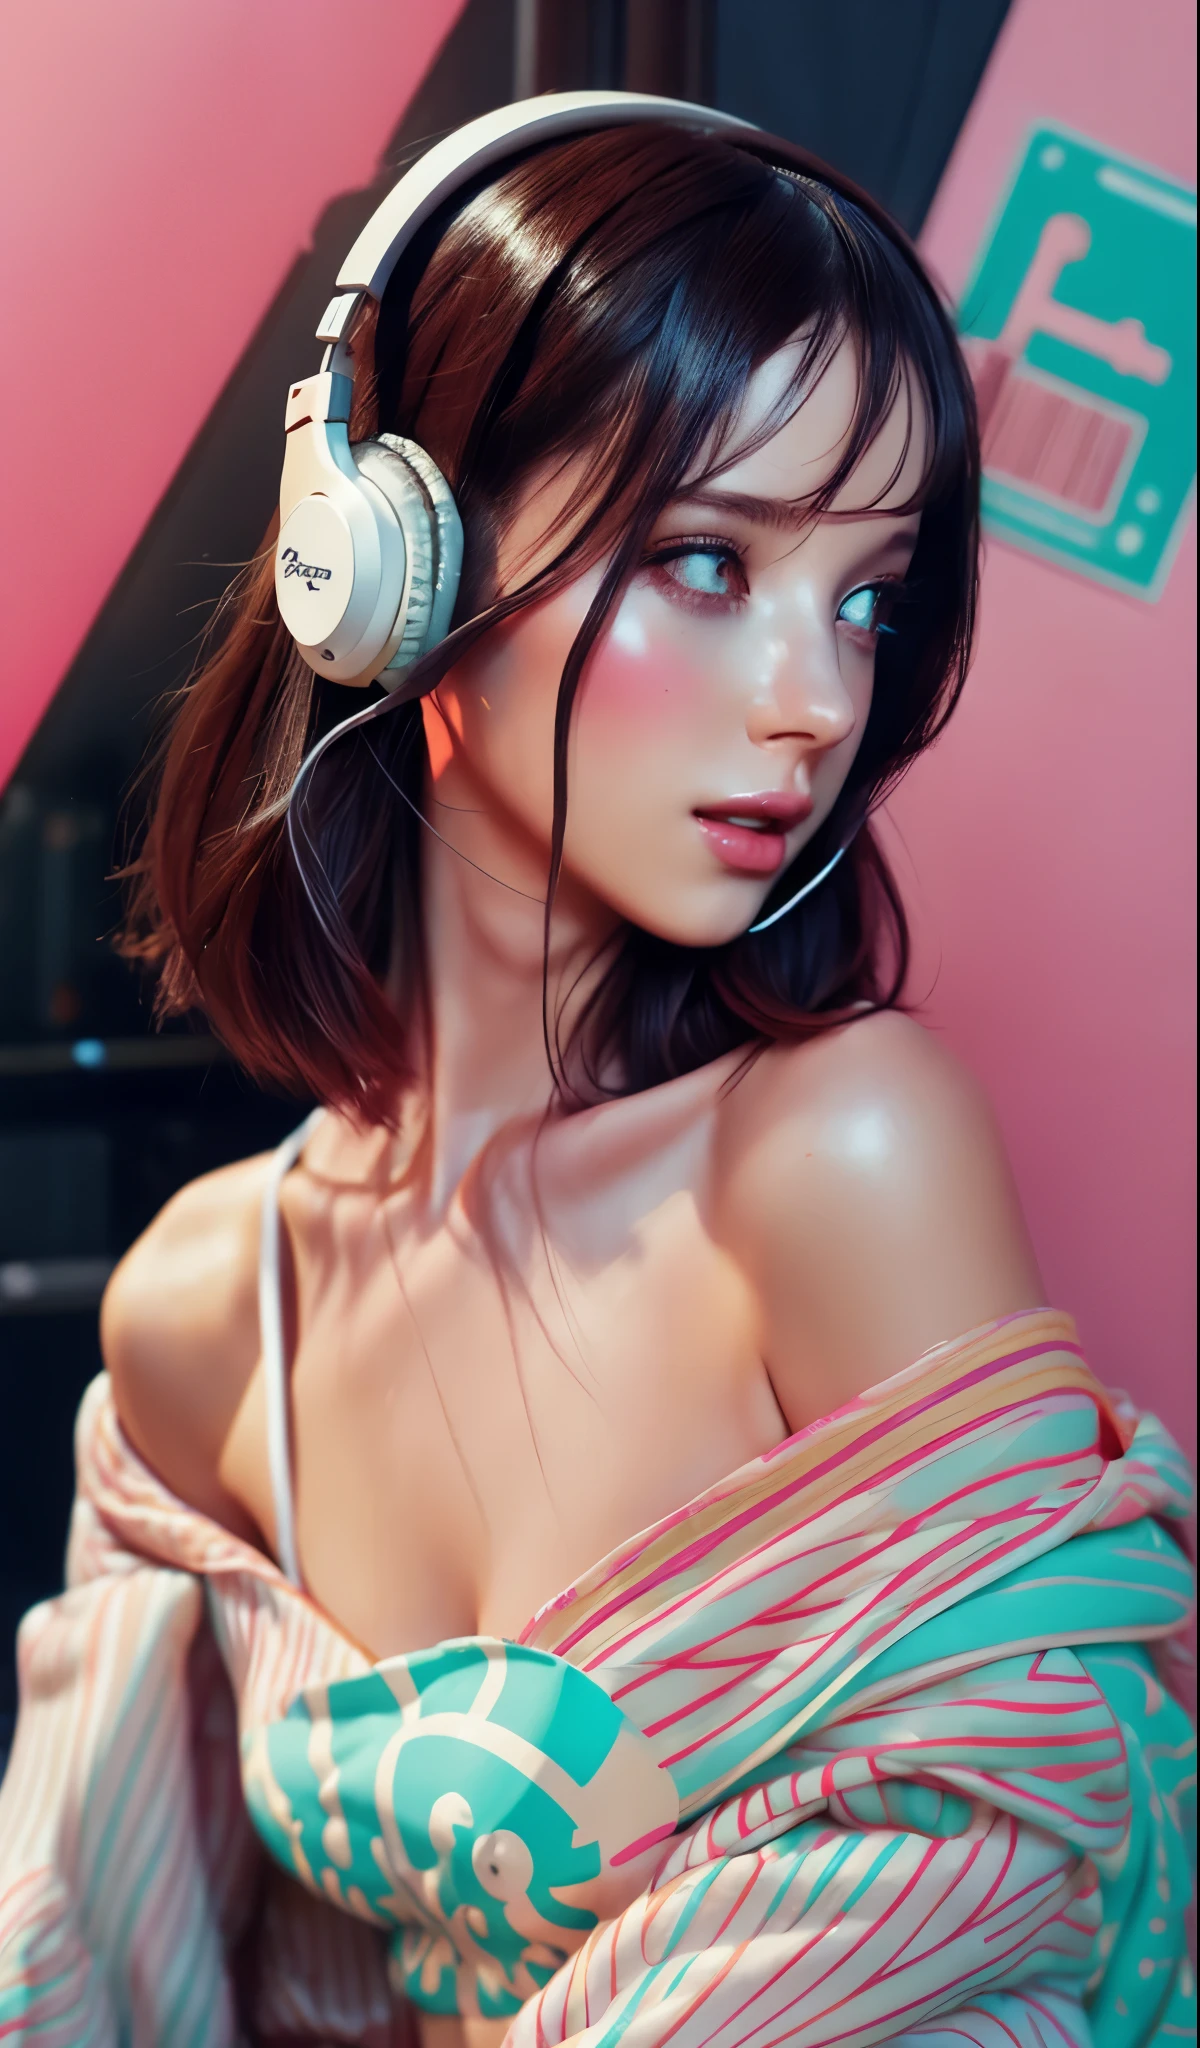 戴着耳机的模特女孩, 城市背景, 复杂的细节, 美观的柔和色彩, 海报背景, 康拉德·罗塞特和伊利亚·库夫希诺夫的艺术作品